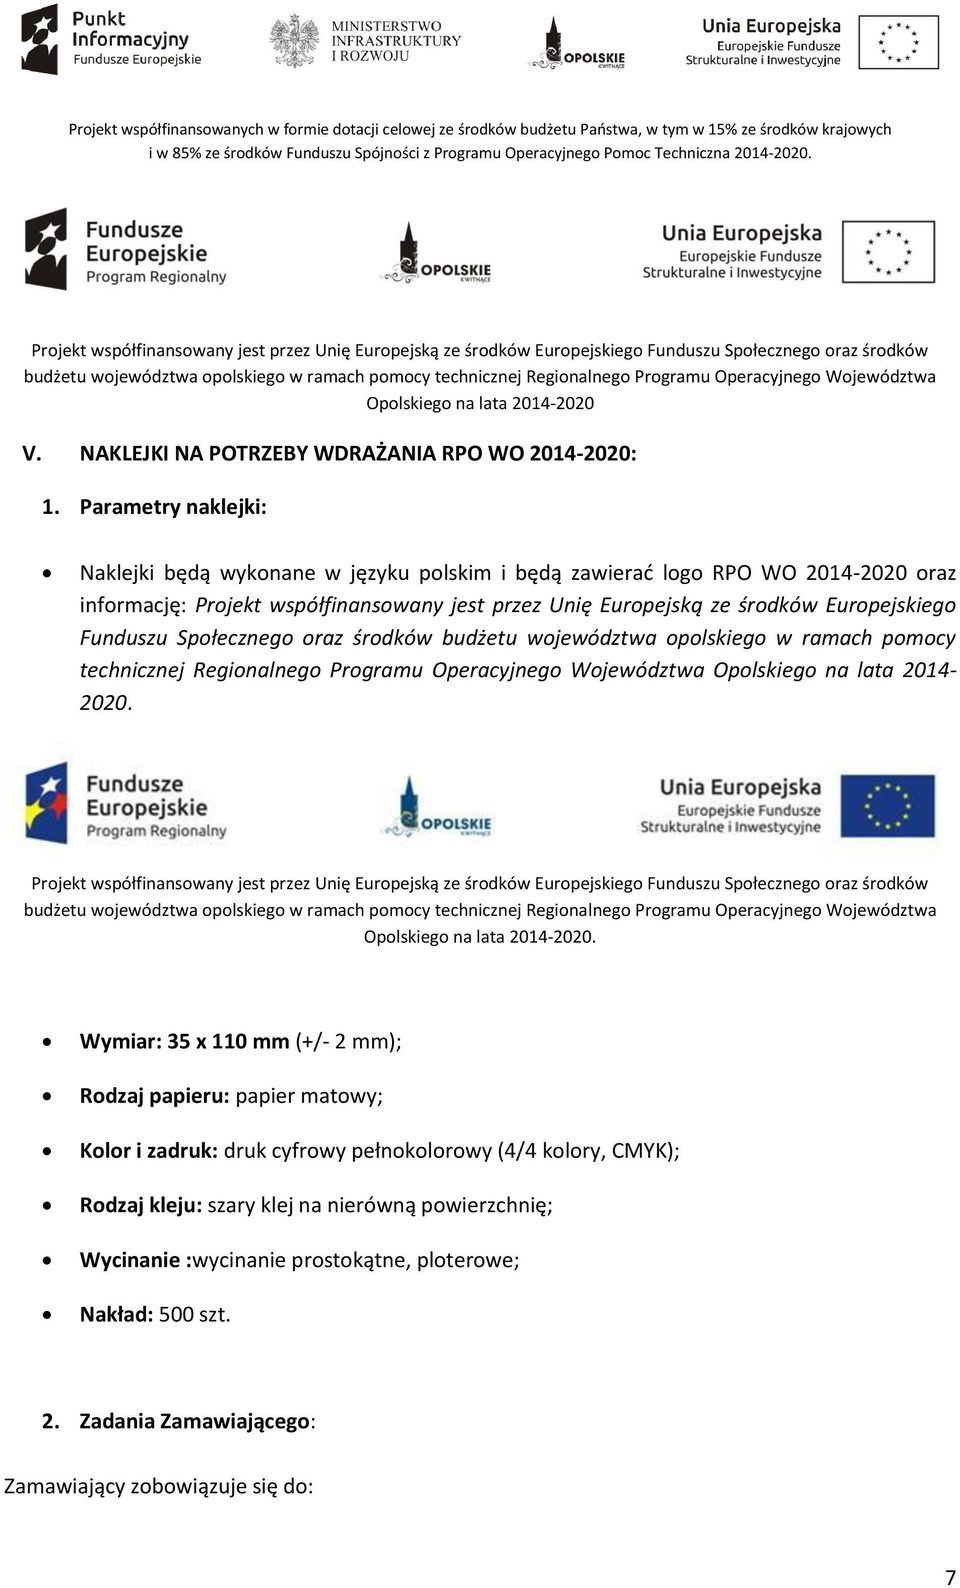 Europejskiego Funduszu Społecznego oraz środków budżetu województwa opolskiego w ramach pomocy technicznej Regionalnego Programu Operacyjnego Województwa Opolskiego na lata